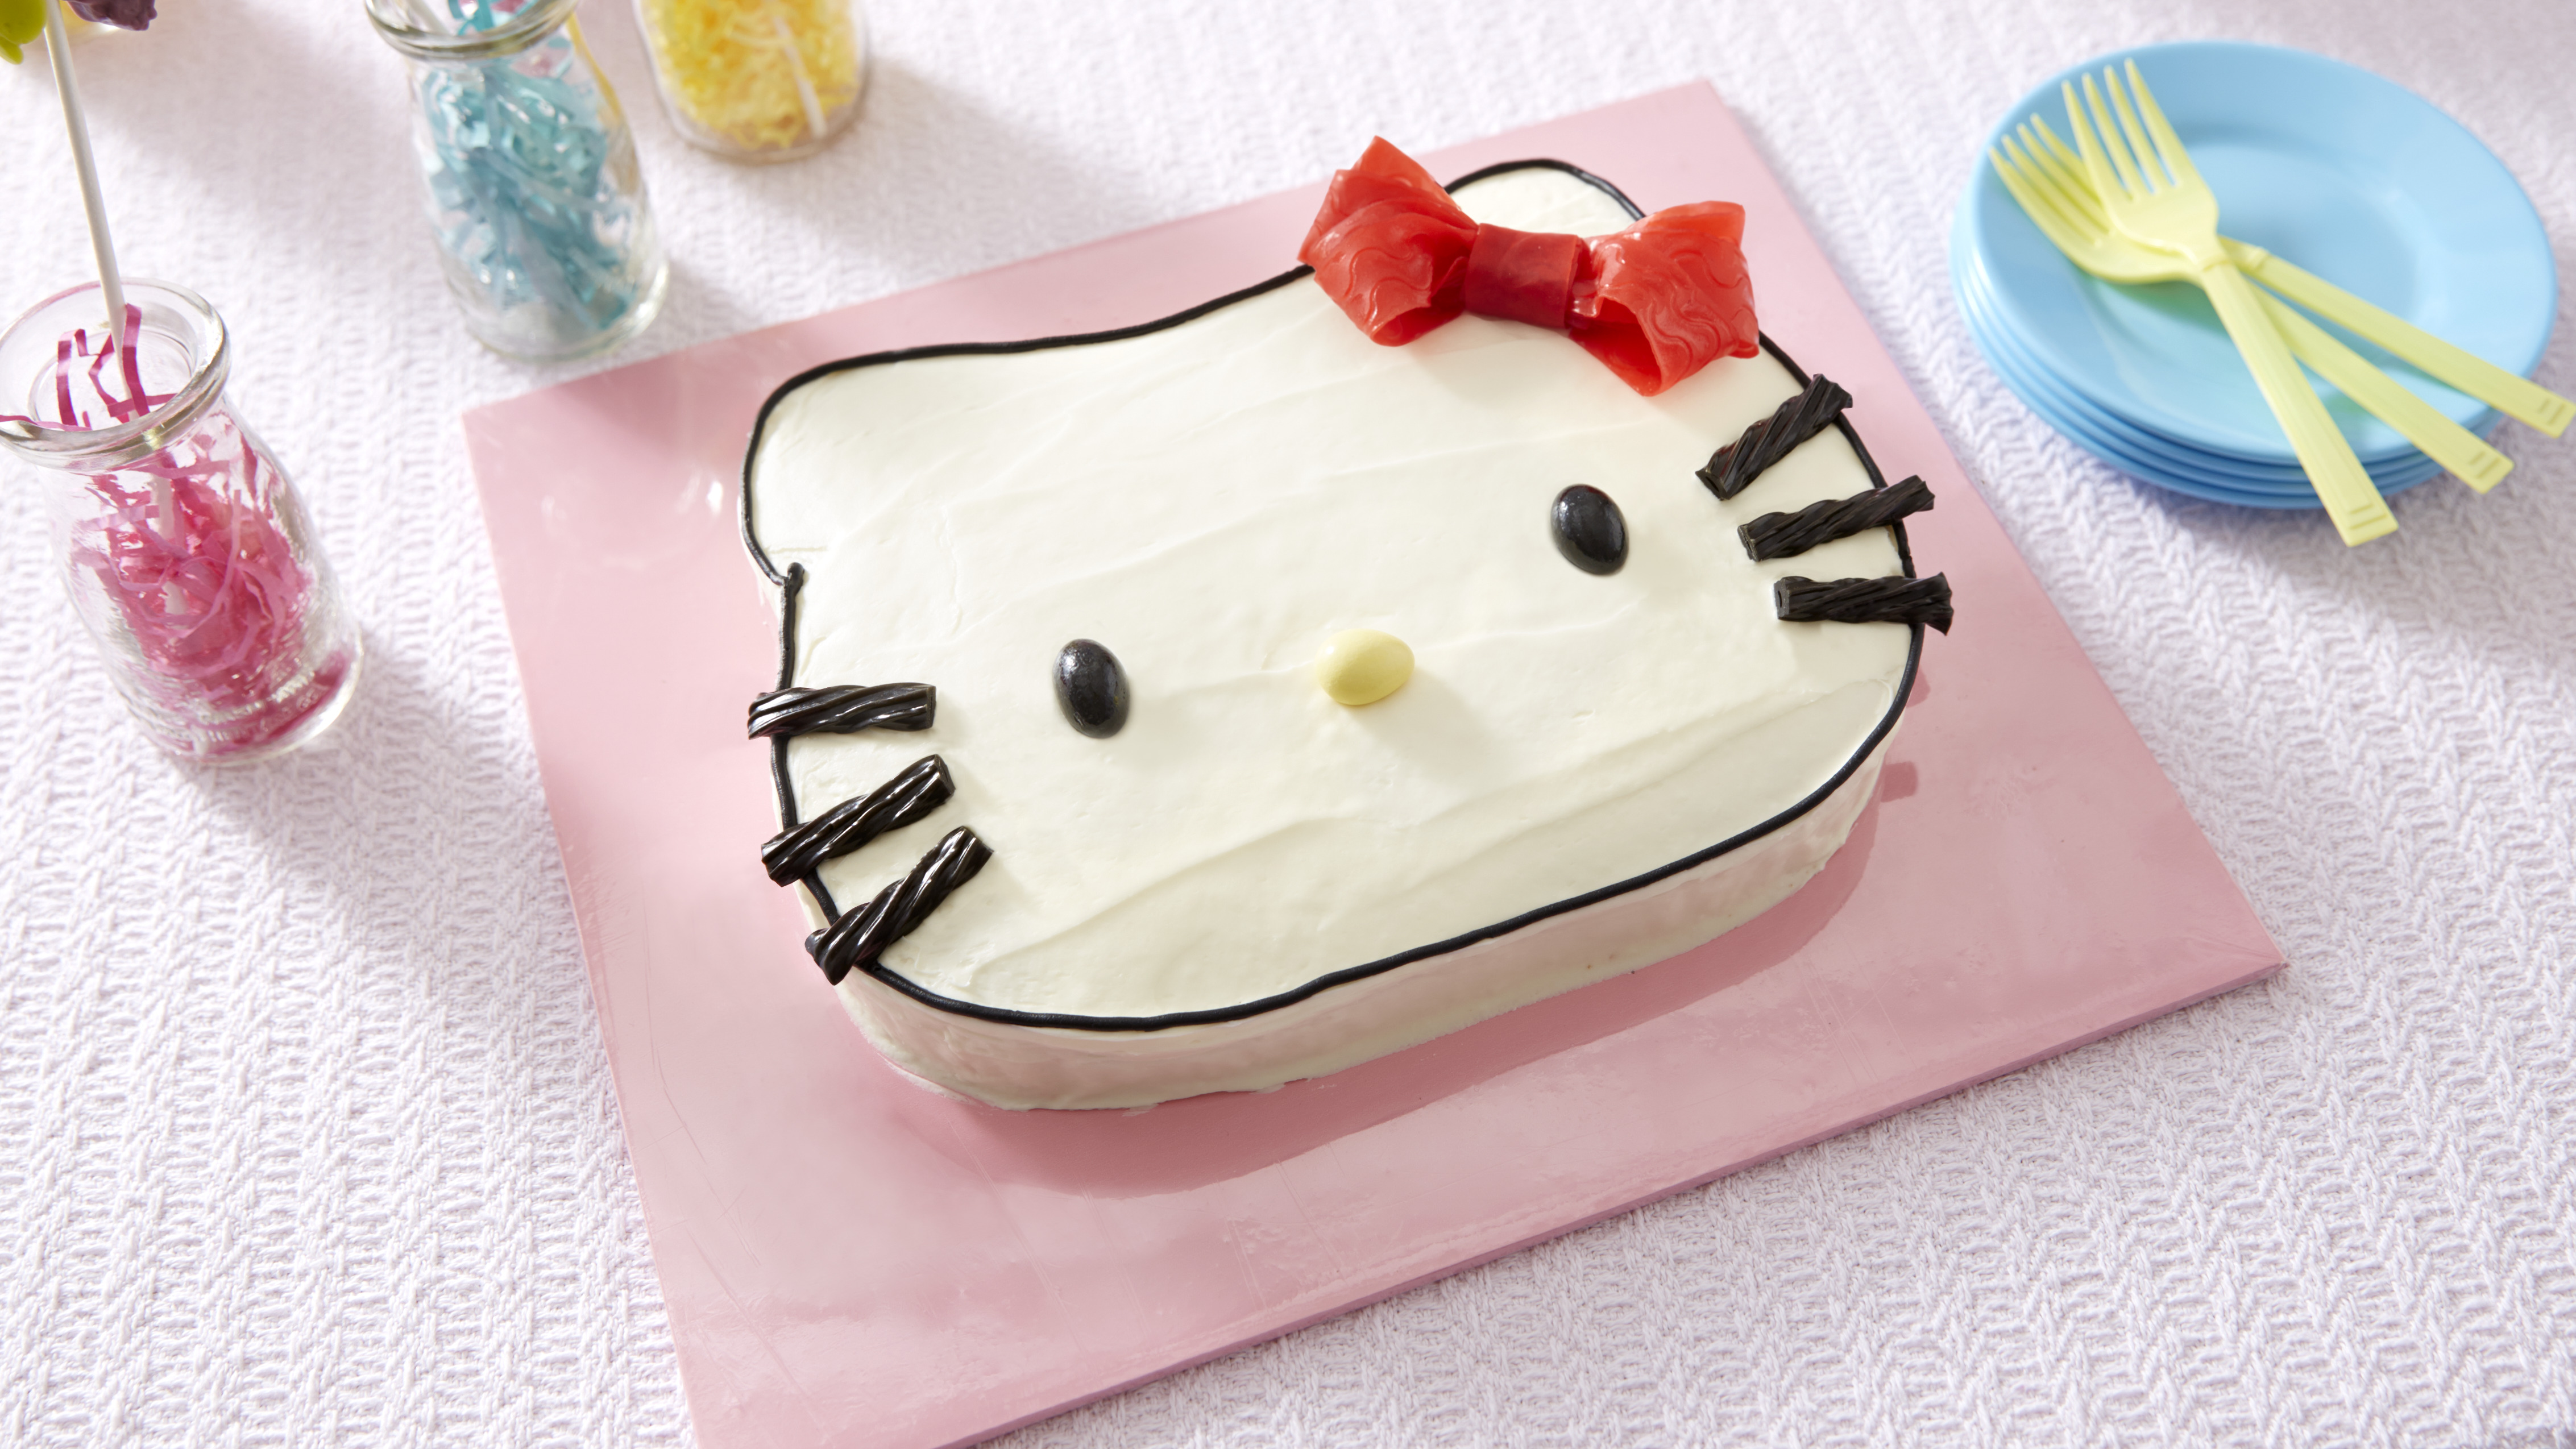 How I made the Hello Kitty birthday cake. | bakingaitch